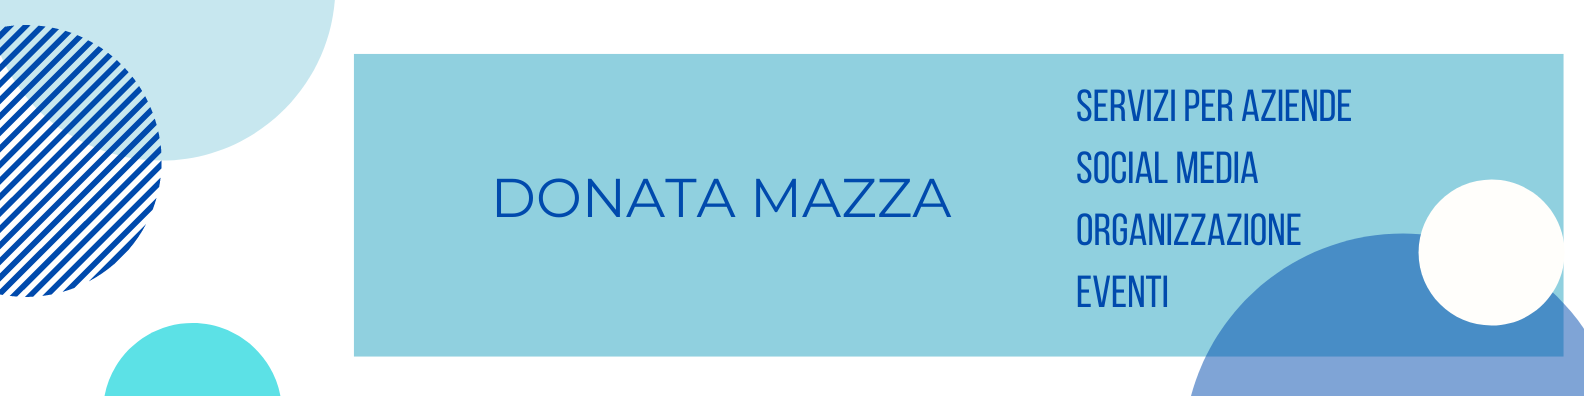 Donata Mazza